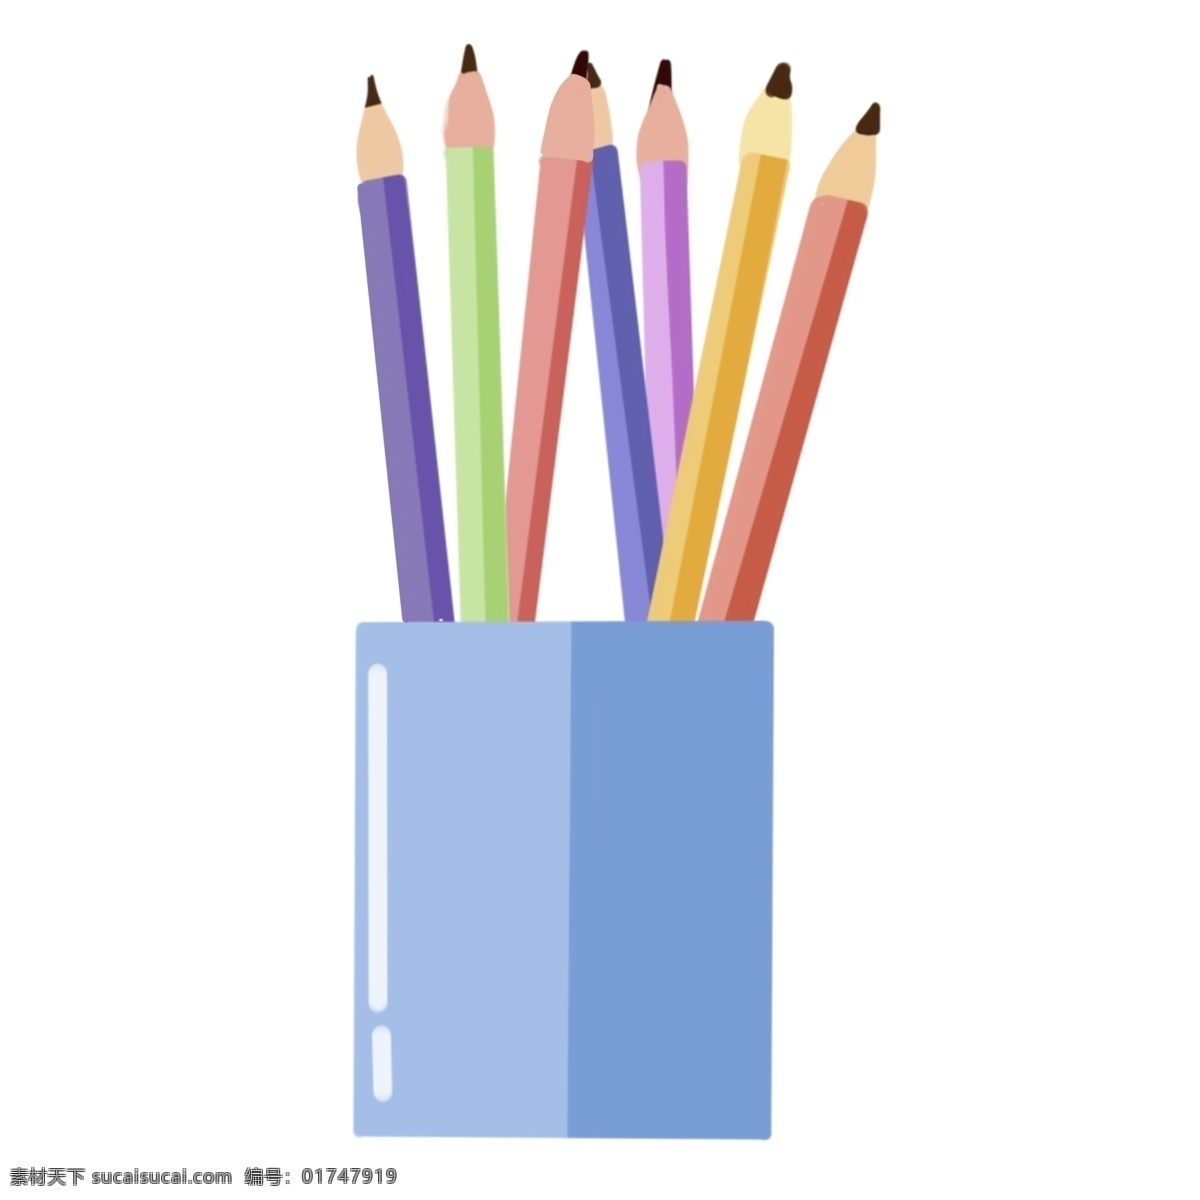 彩色 铅笔盒 笔筒 铅笔 办公文具